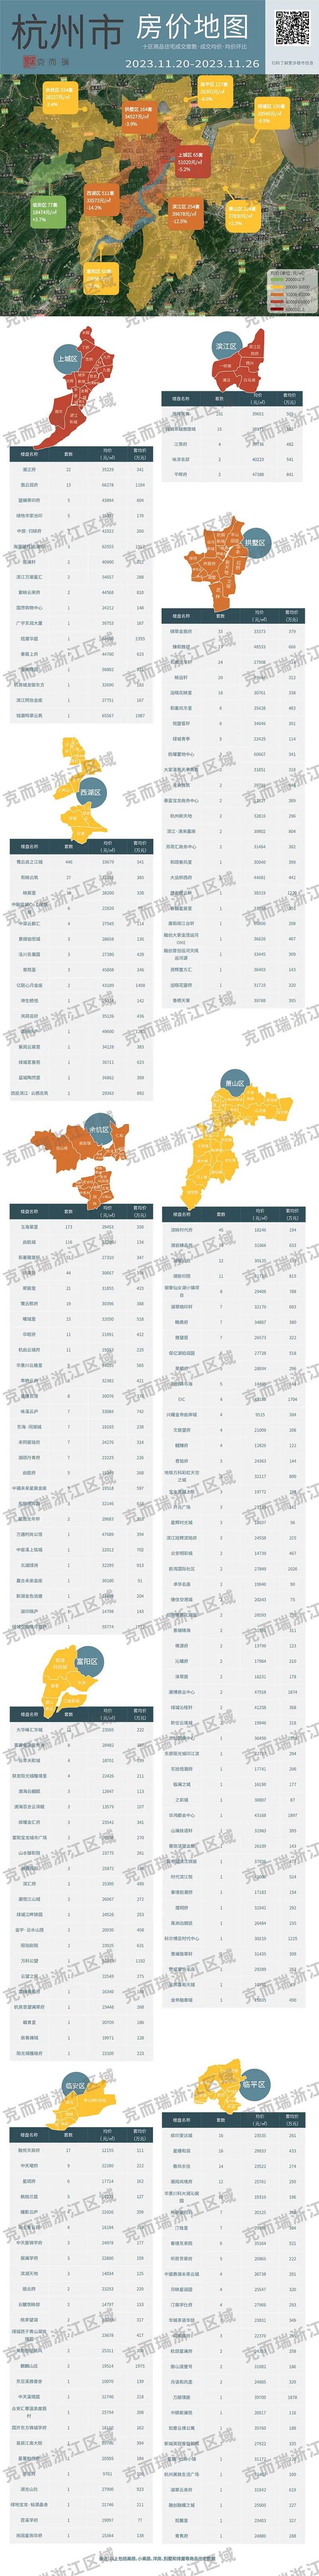 这个区域卖出杭州1/4的房子，套均价520万